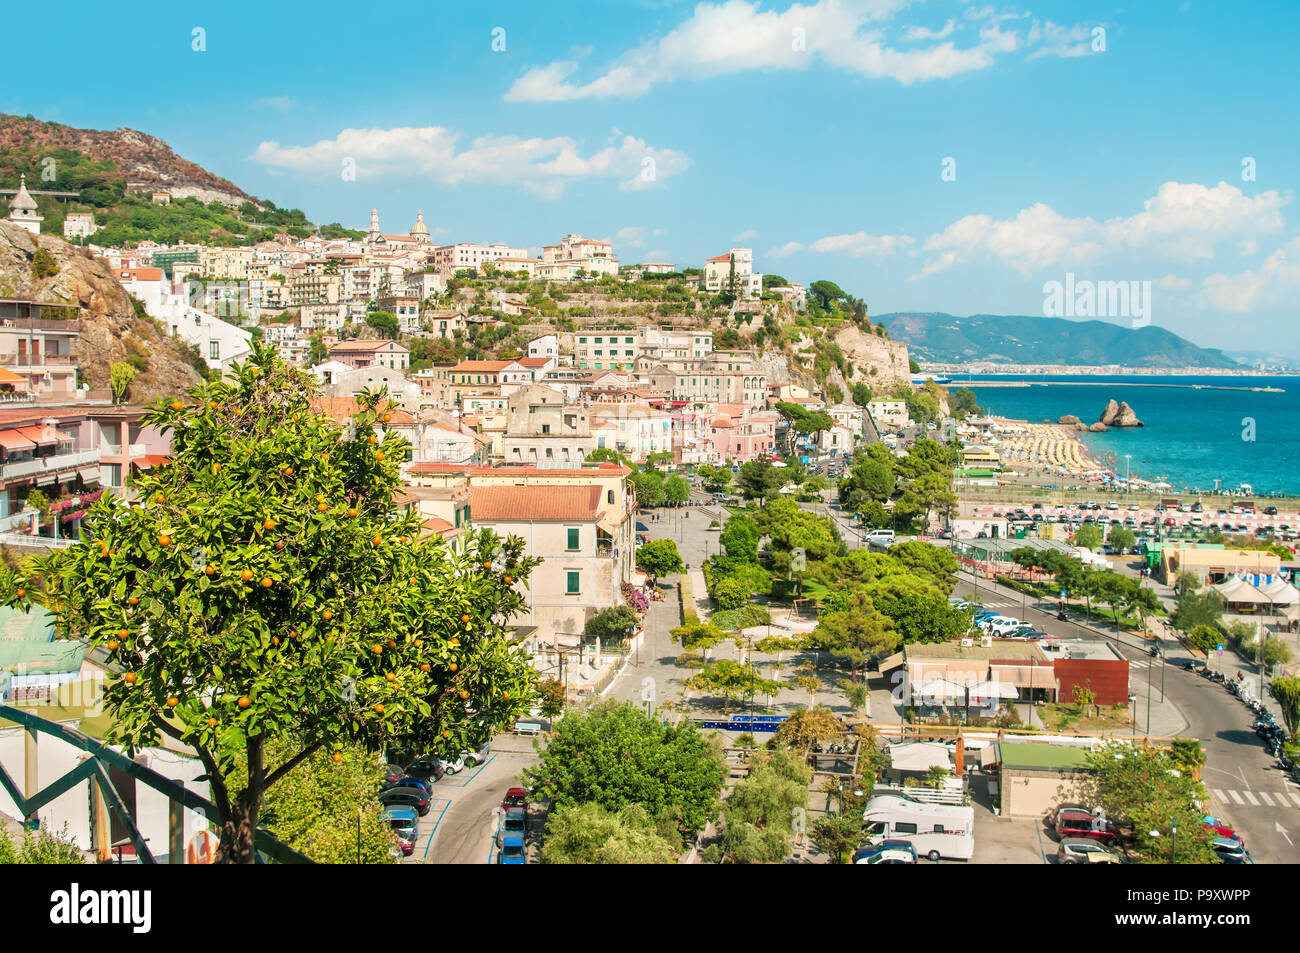 Avis de petite ville sur la côte amalfitaine avec mandarin en premier plan sur la journée ensoleillée, Vietri sul Mare, Salerne, Campanie, Italie Banque D'Images